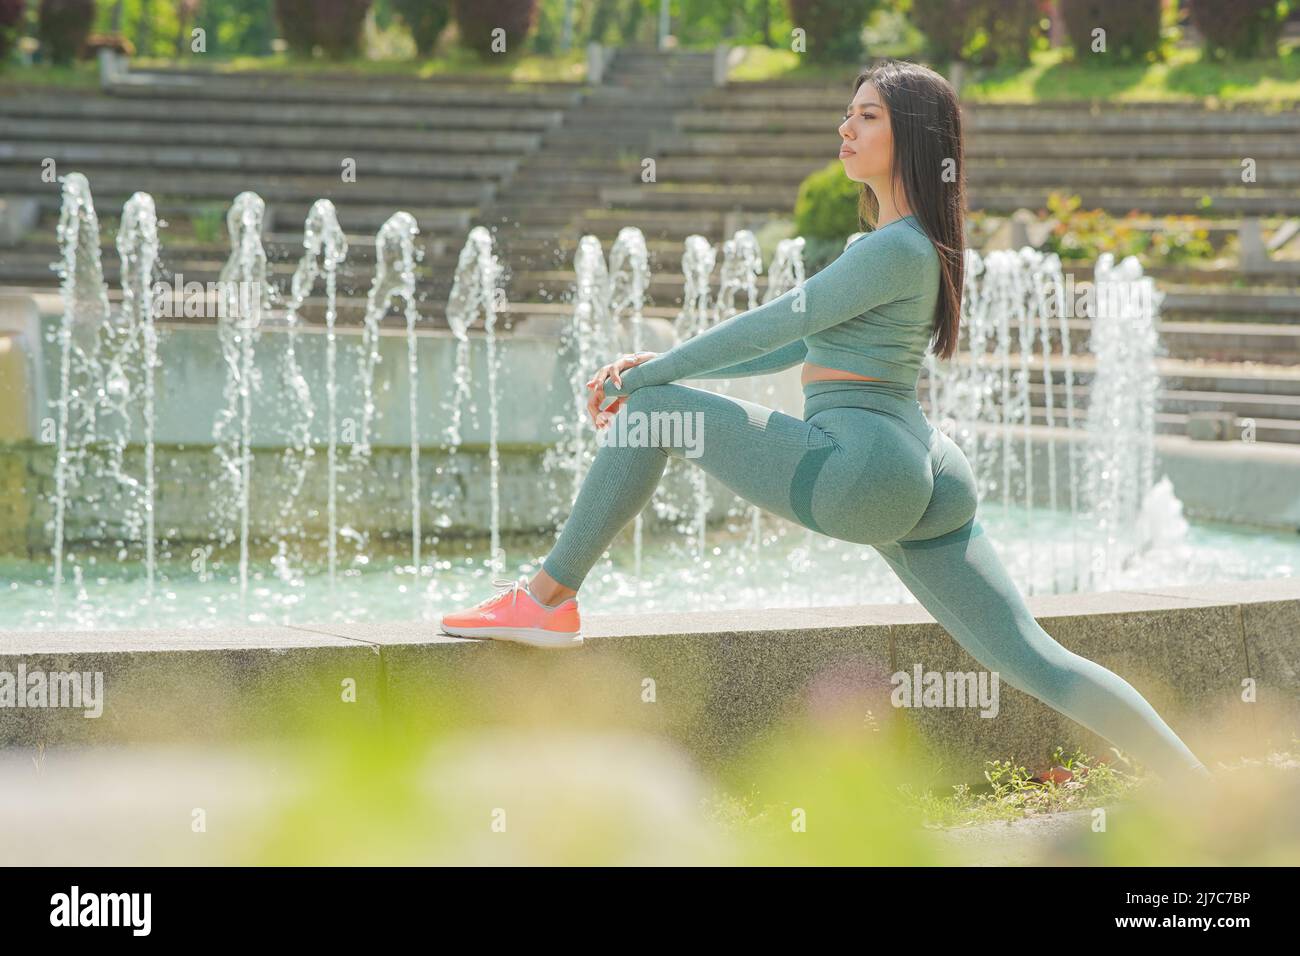 Belle jeune fille de cheveux bruns en vert olive tenue de sport s'étendant après l'exercice de plein air près de la fontaine publique Banque D'Images